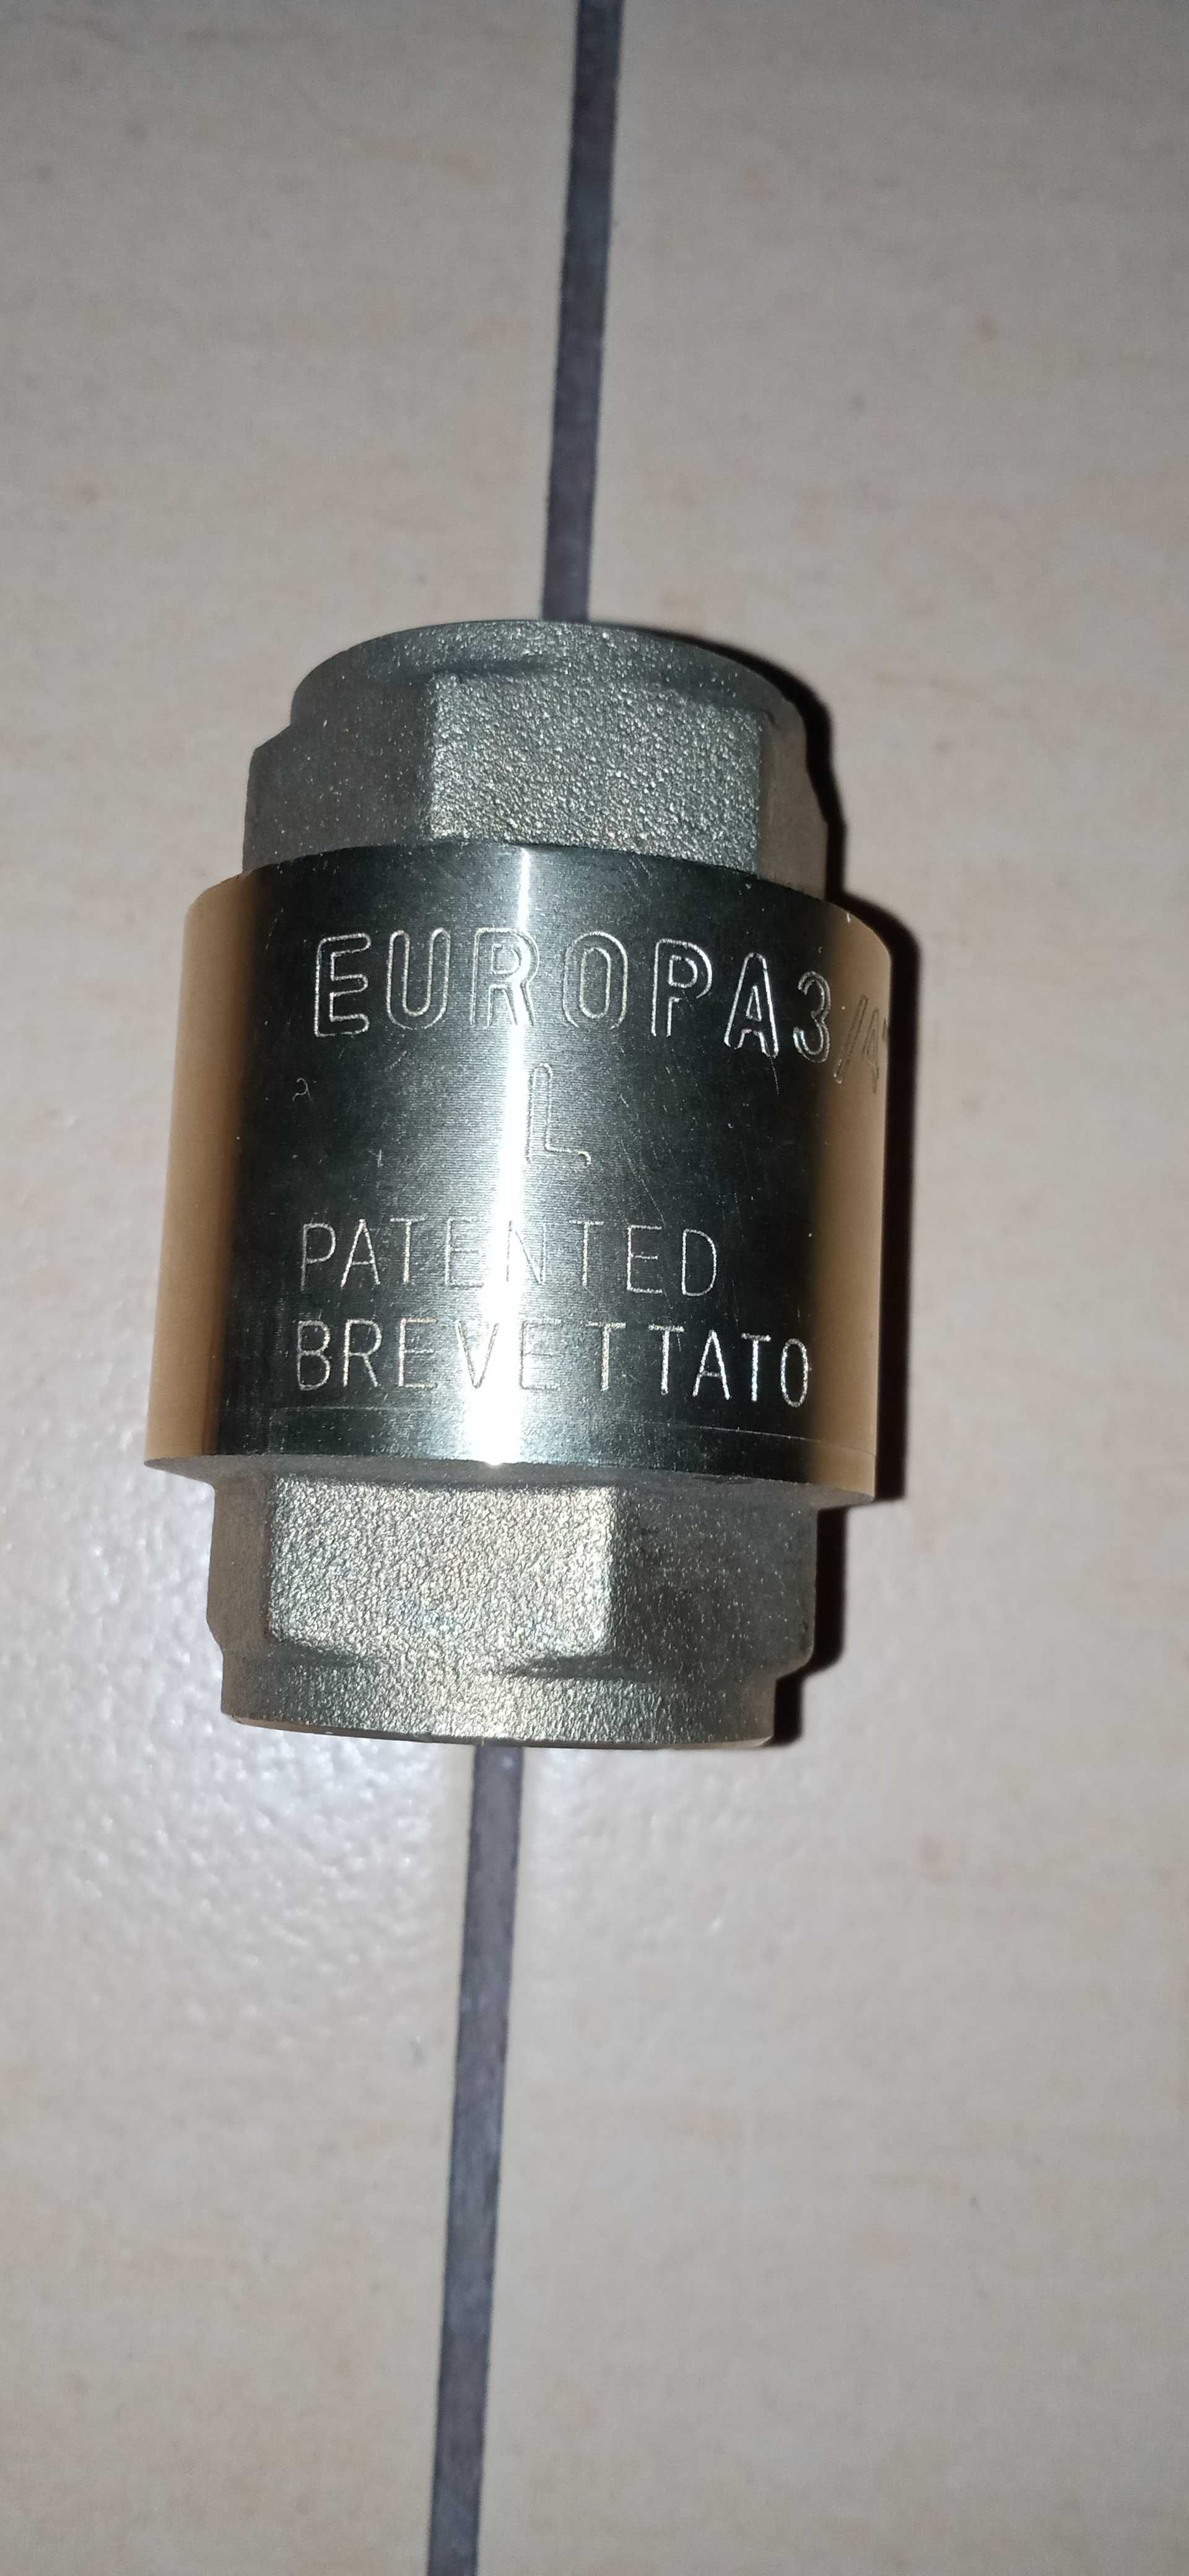 Зворотній клапан для води europa 3/4" patented brevettato.